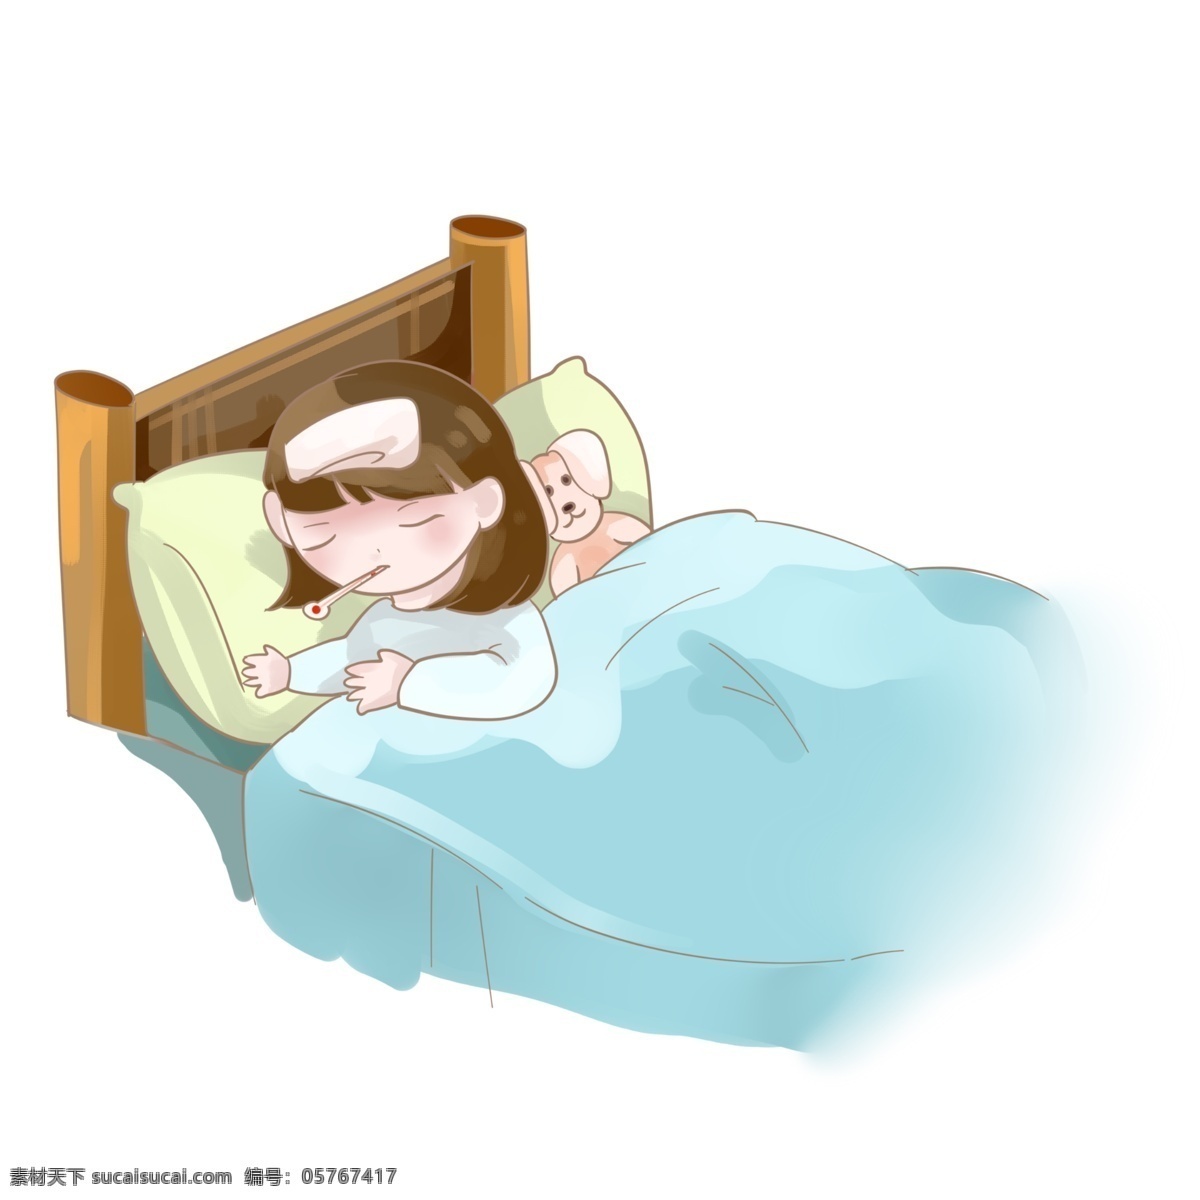 生病 发烧 卧床不起 小女孩 病人 感冒发烧 温度计 休息 难受 降温 痛苦的样子